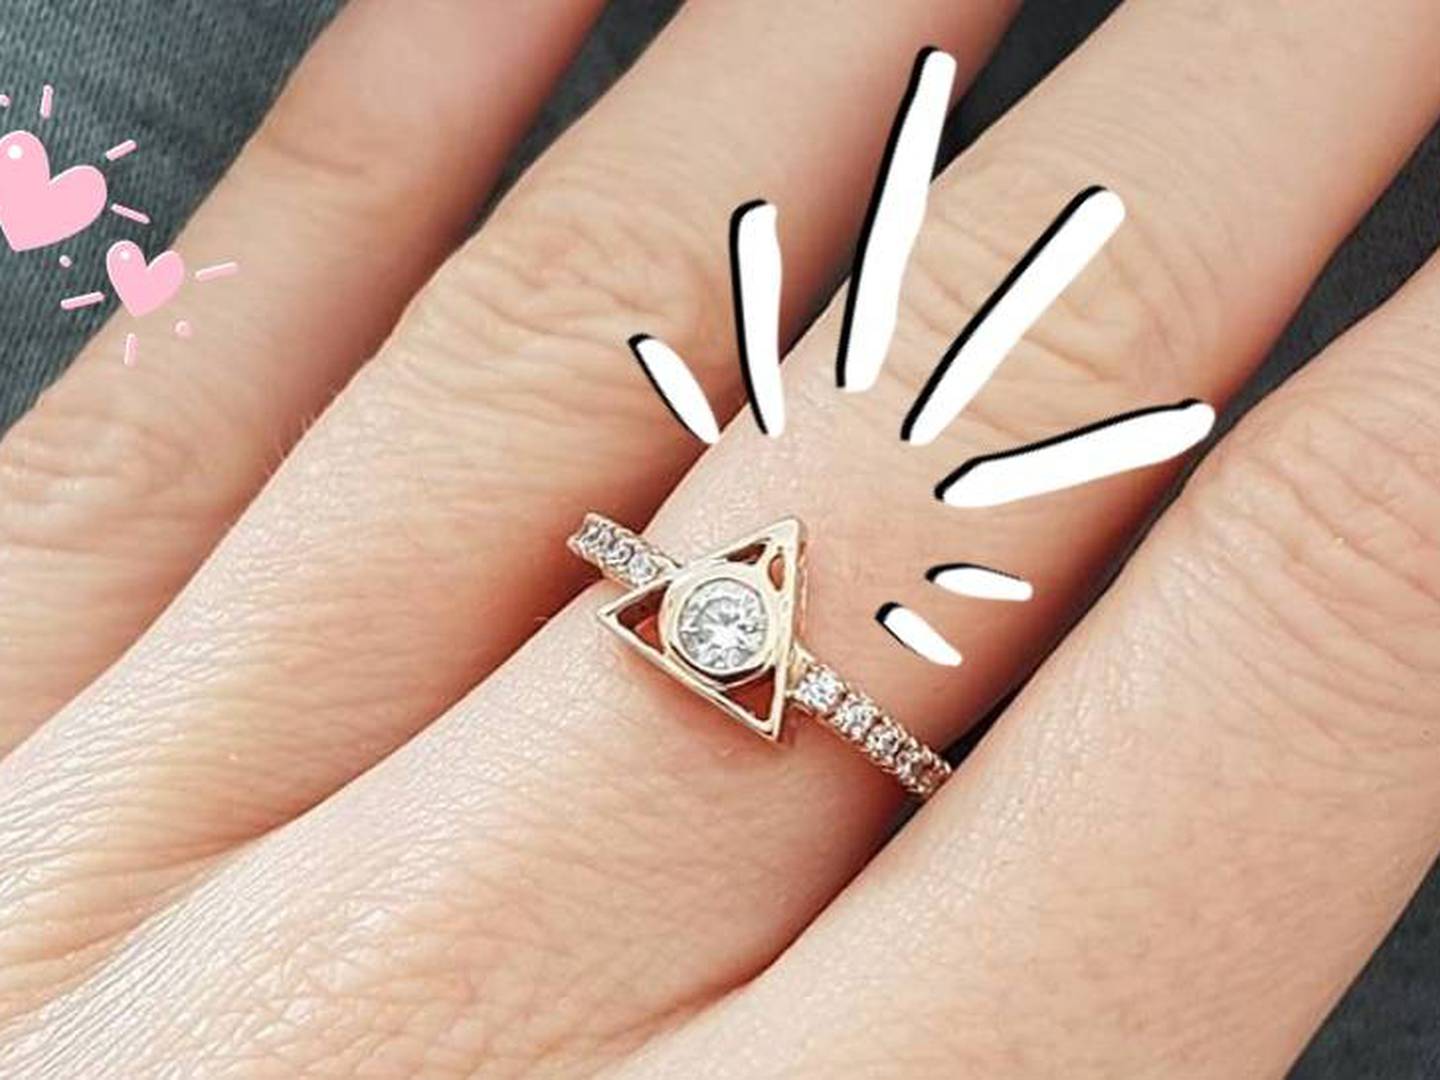 Los anillos de compromiso de Harry Potter toda fan querrá para boda